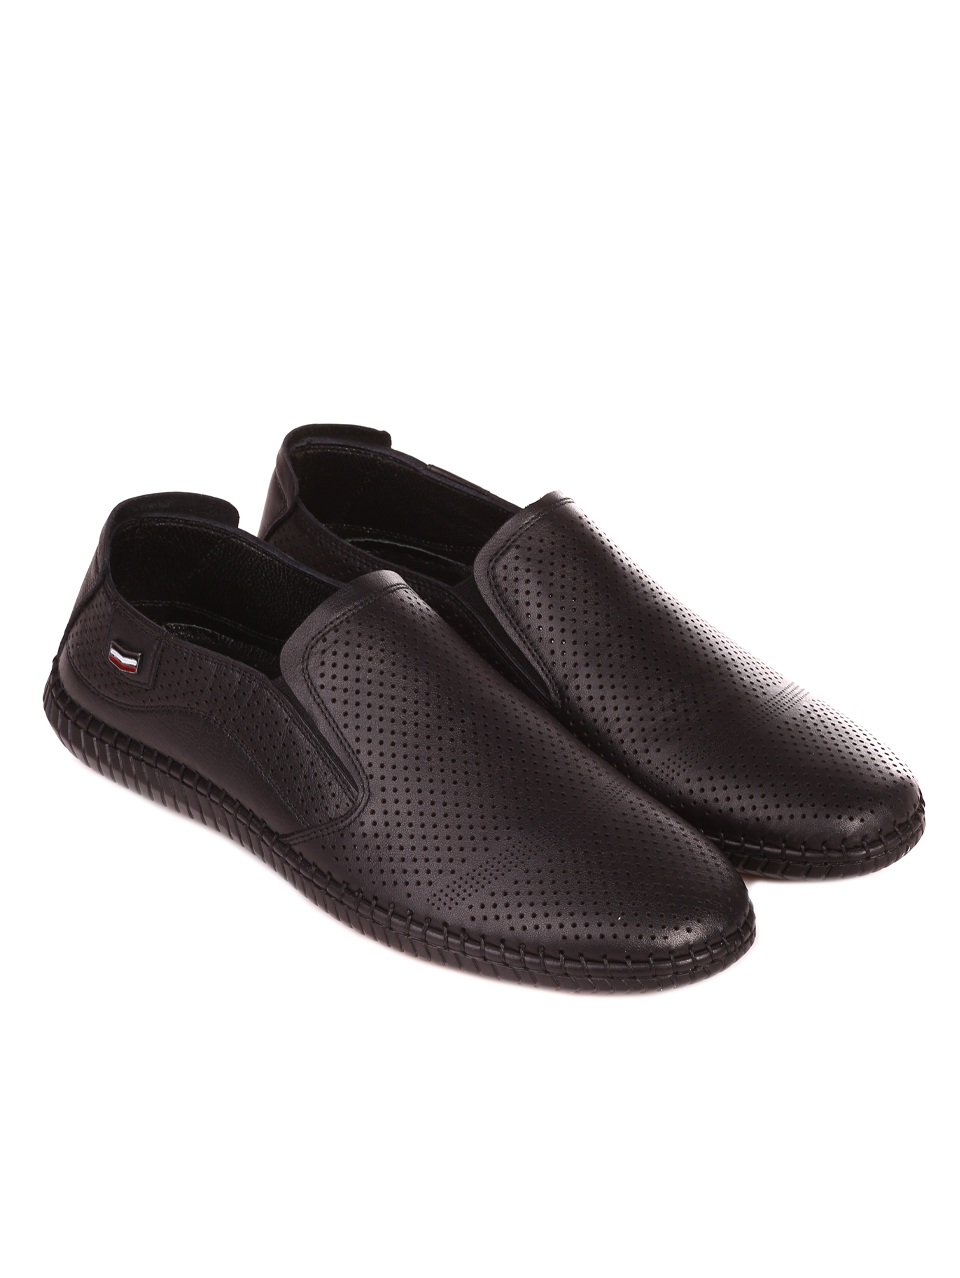 Eжедневни мъжки обувки от естествена кожа в черно 7AT-24377 black